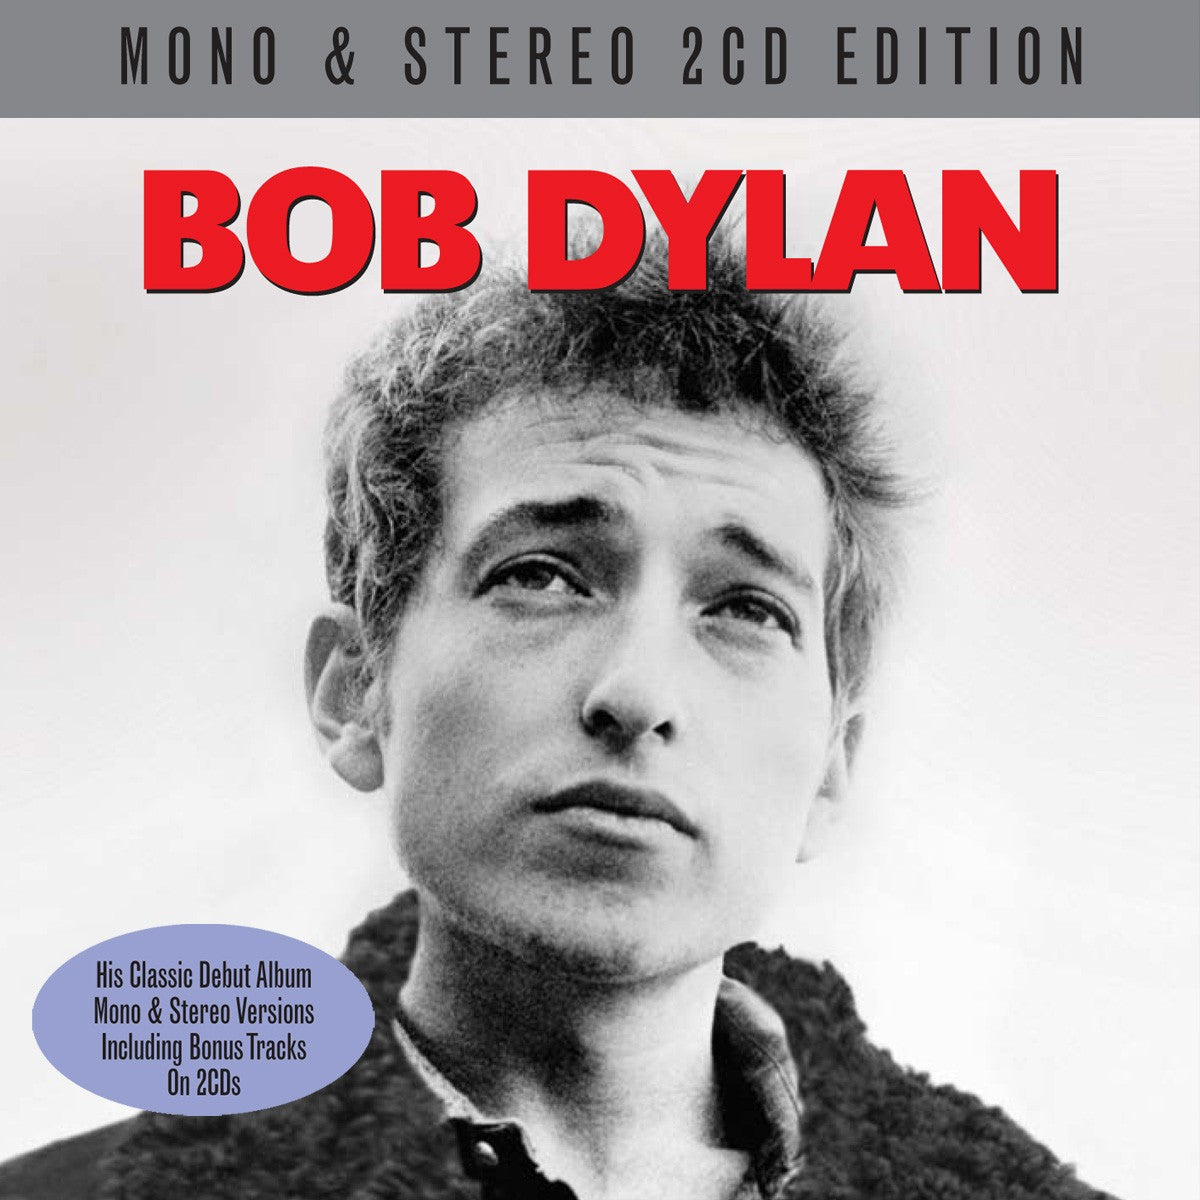 BOB DYLAN (DEBUT ALBUM): 2 CDS, MONO & STEREO VERSIONS